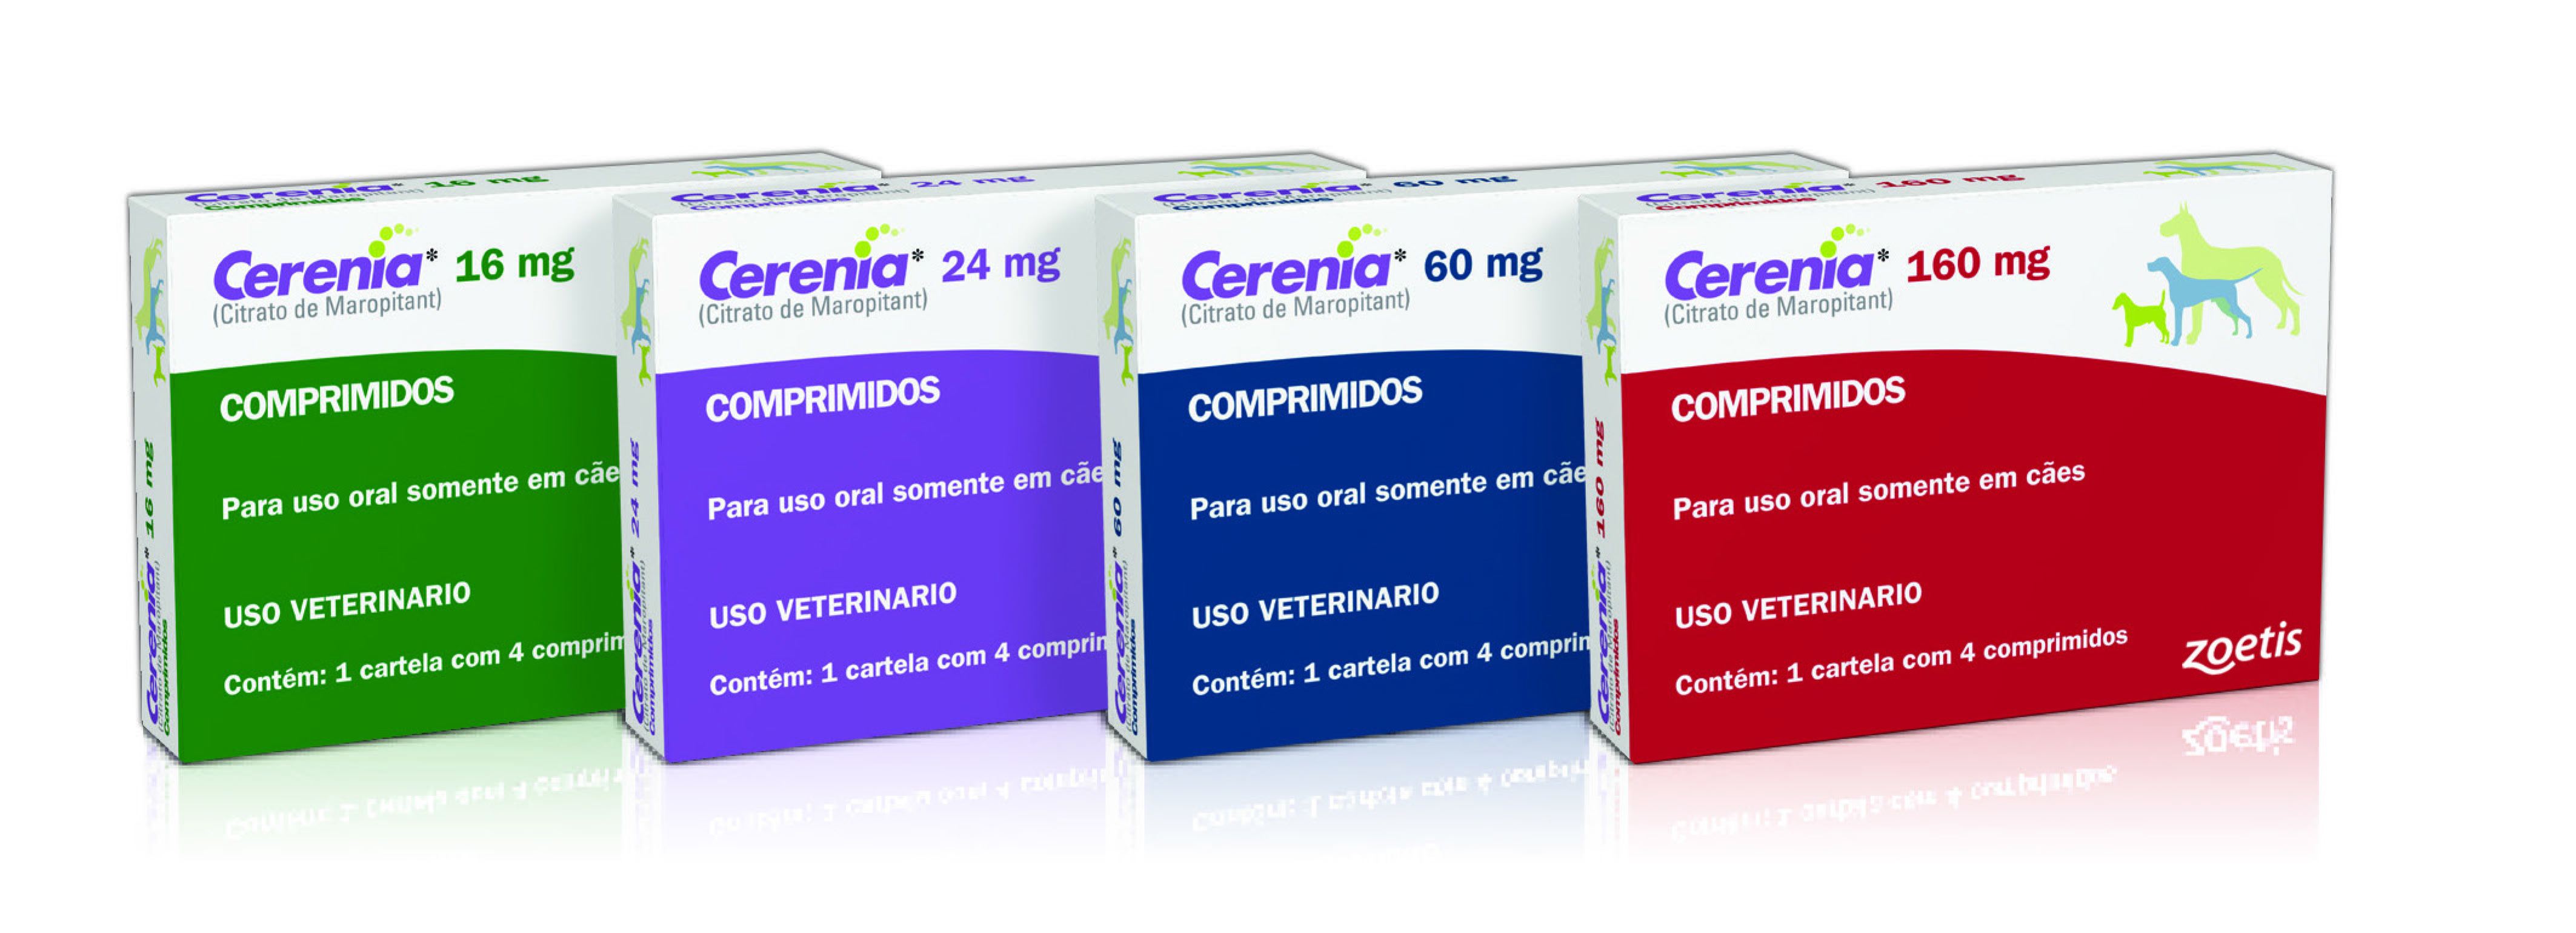 Cerenia Product